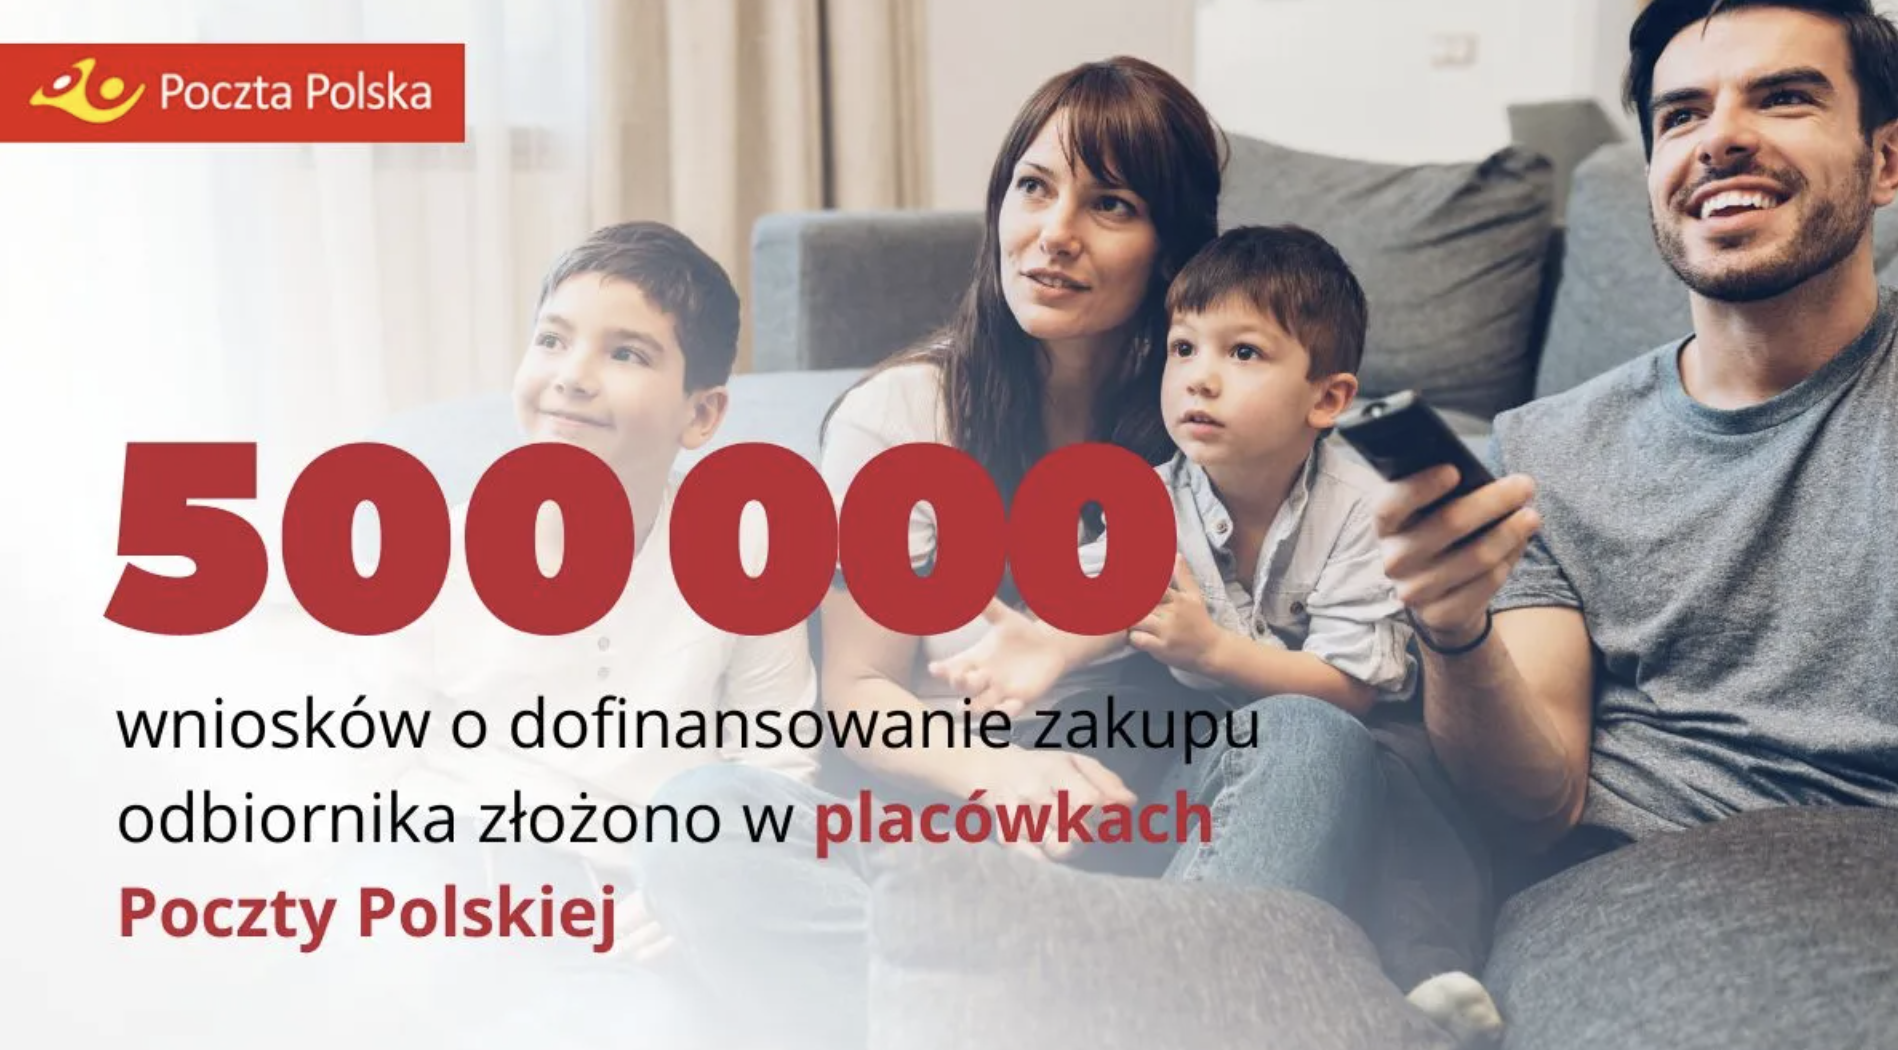 Poczta Polska obsłużyła pół miliona wniosków o dofinansowanie zakupu odbiornika cyfrowego